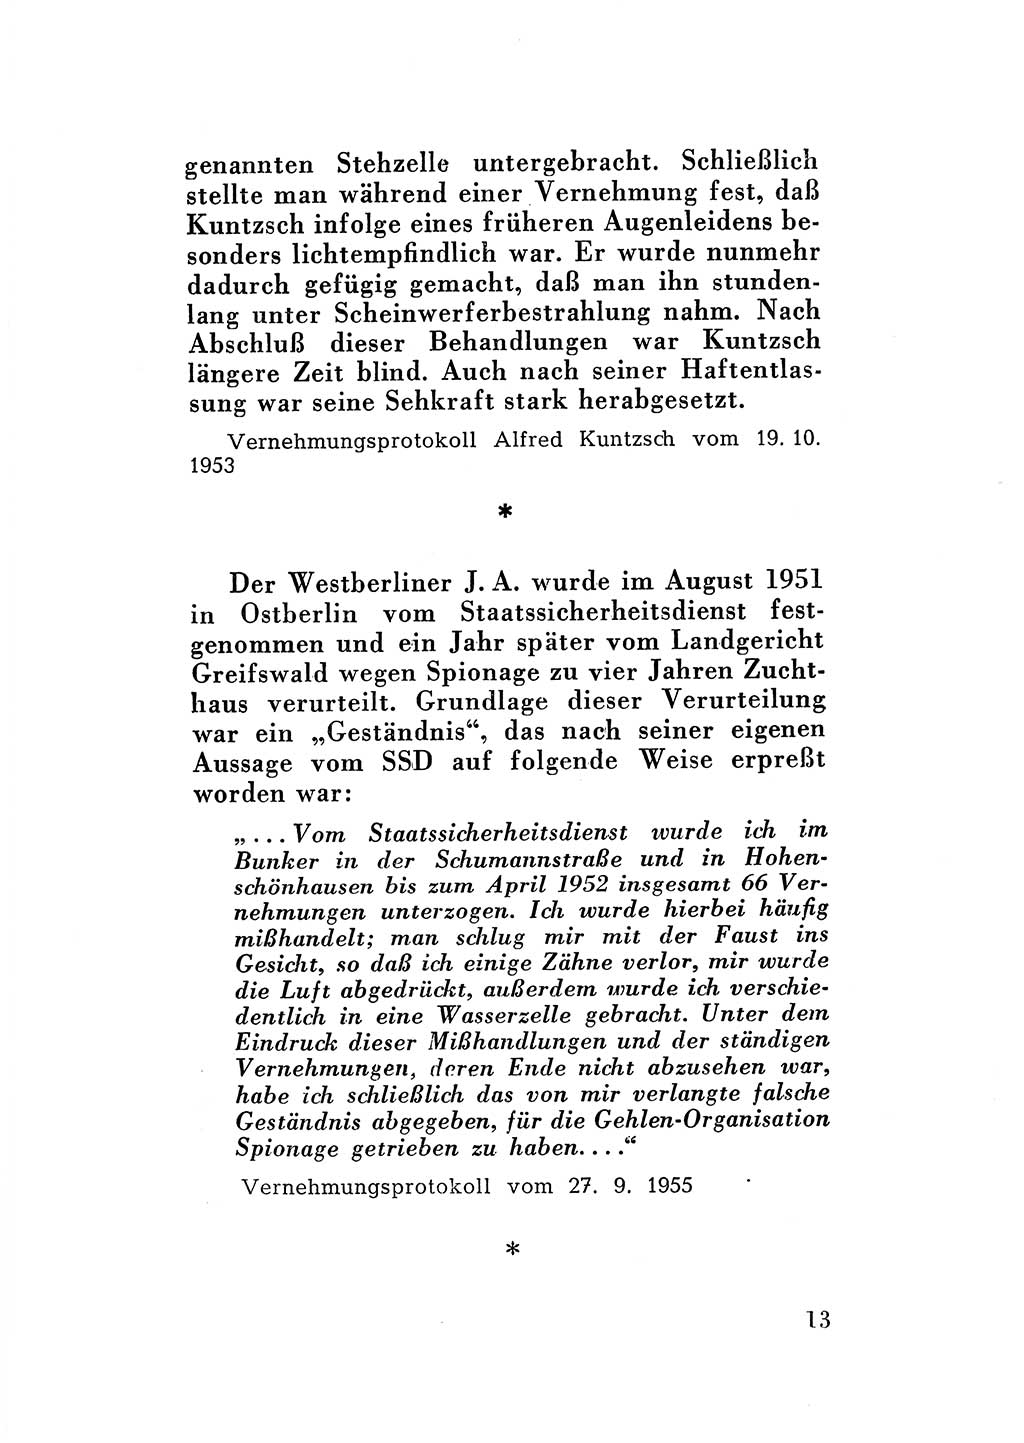 Katalog des Unrechts, Untersuchungsausschuß Freiheitlicher Juristen (UfJ) [Bundesrepublik Deutschland (BRD)] 1956, Seite 13 (Kat. UnR. UfJ BRD 1956, S. 13)